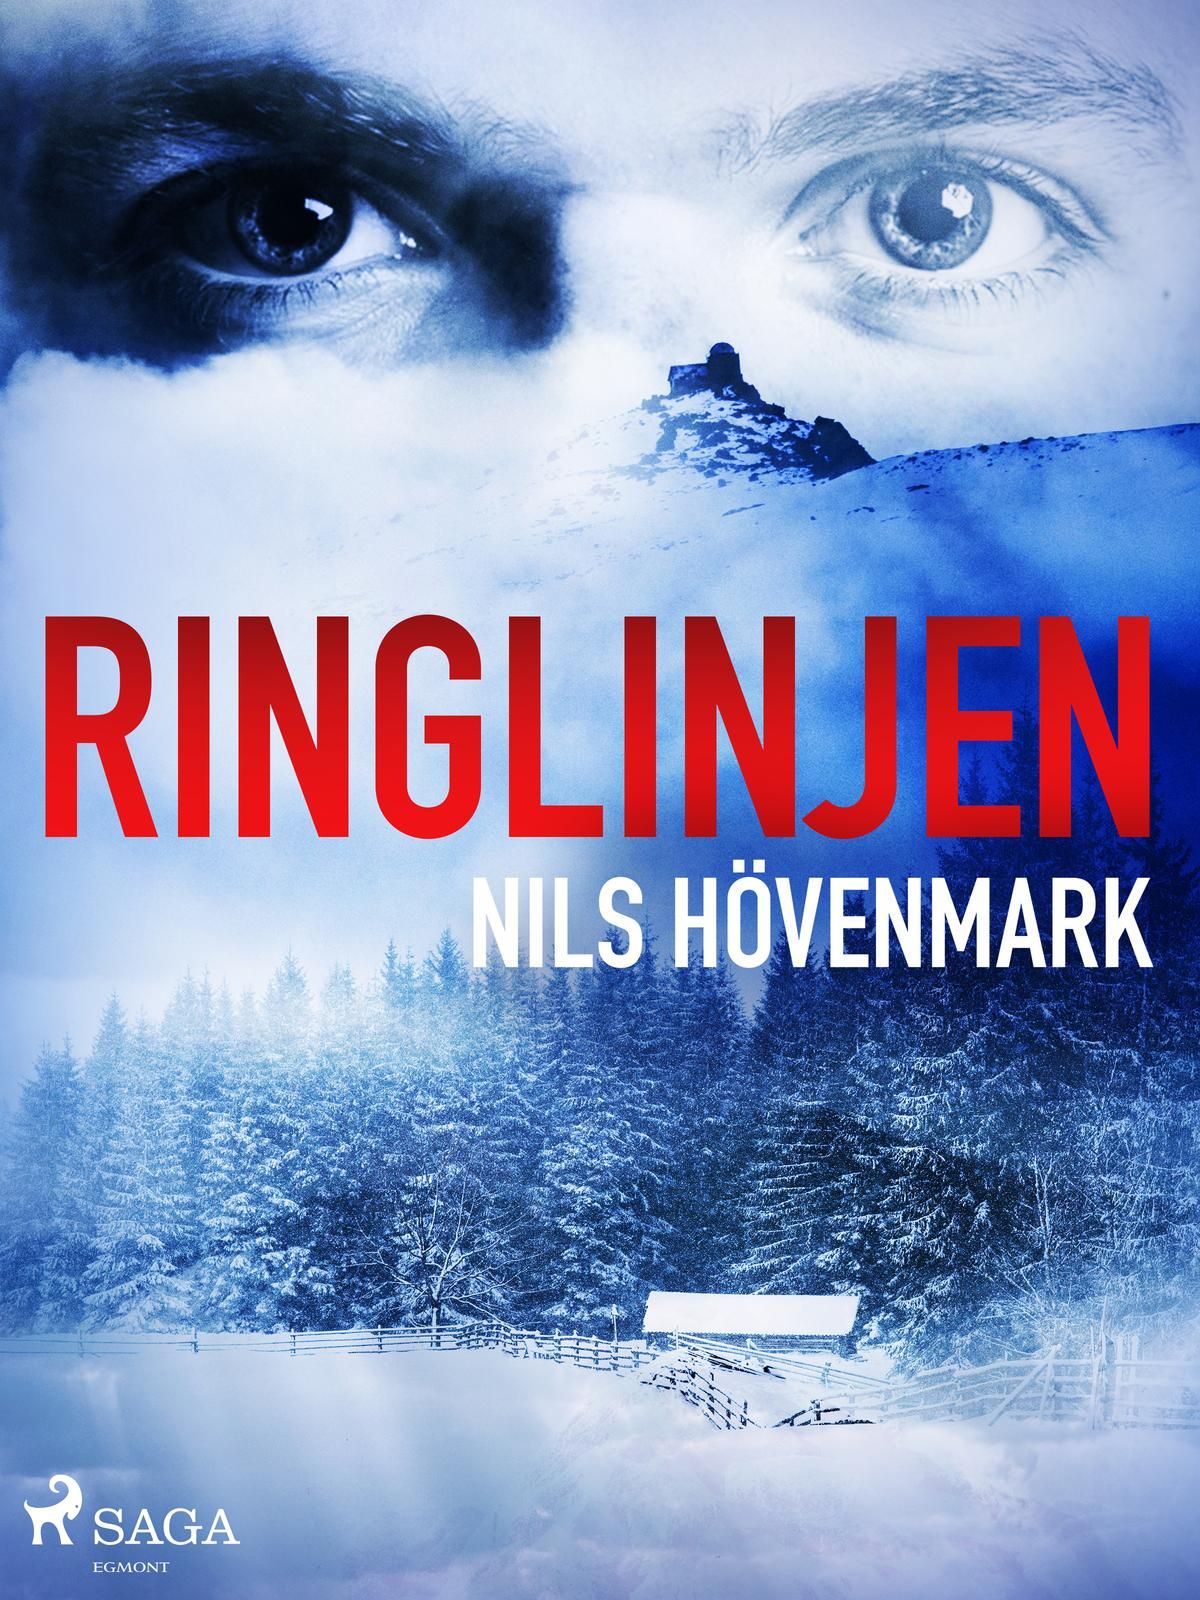 Ringlinjen, e-bog af Nils Hövenmark